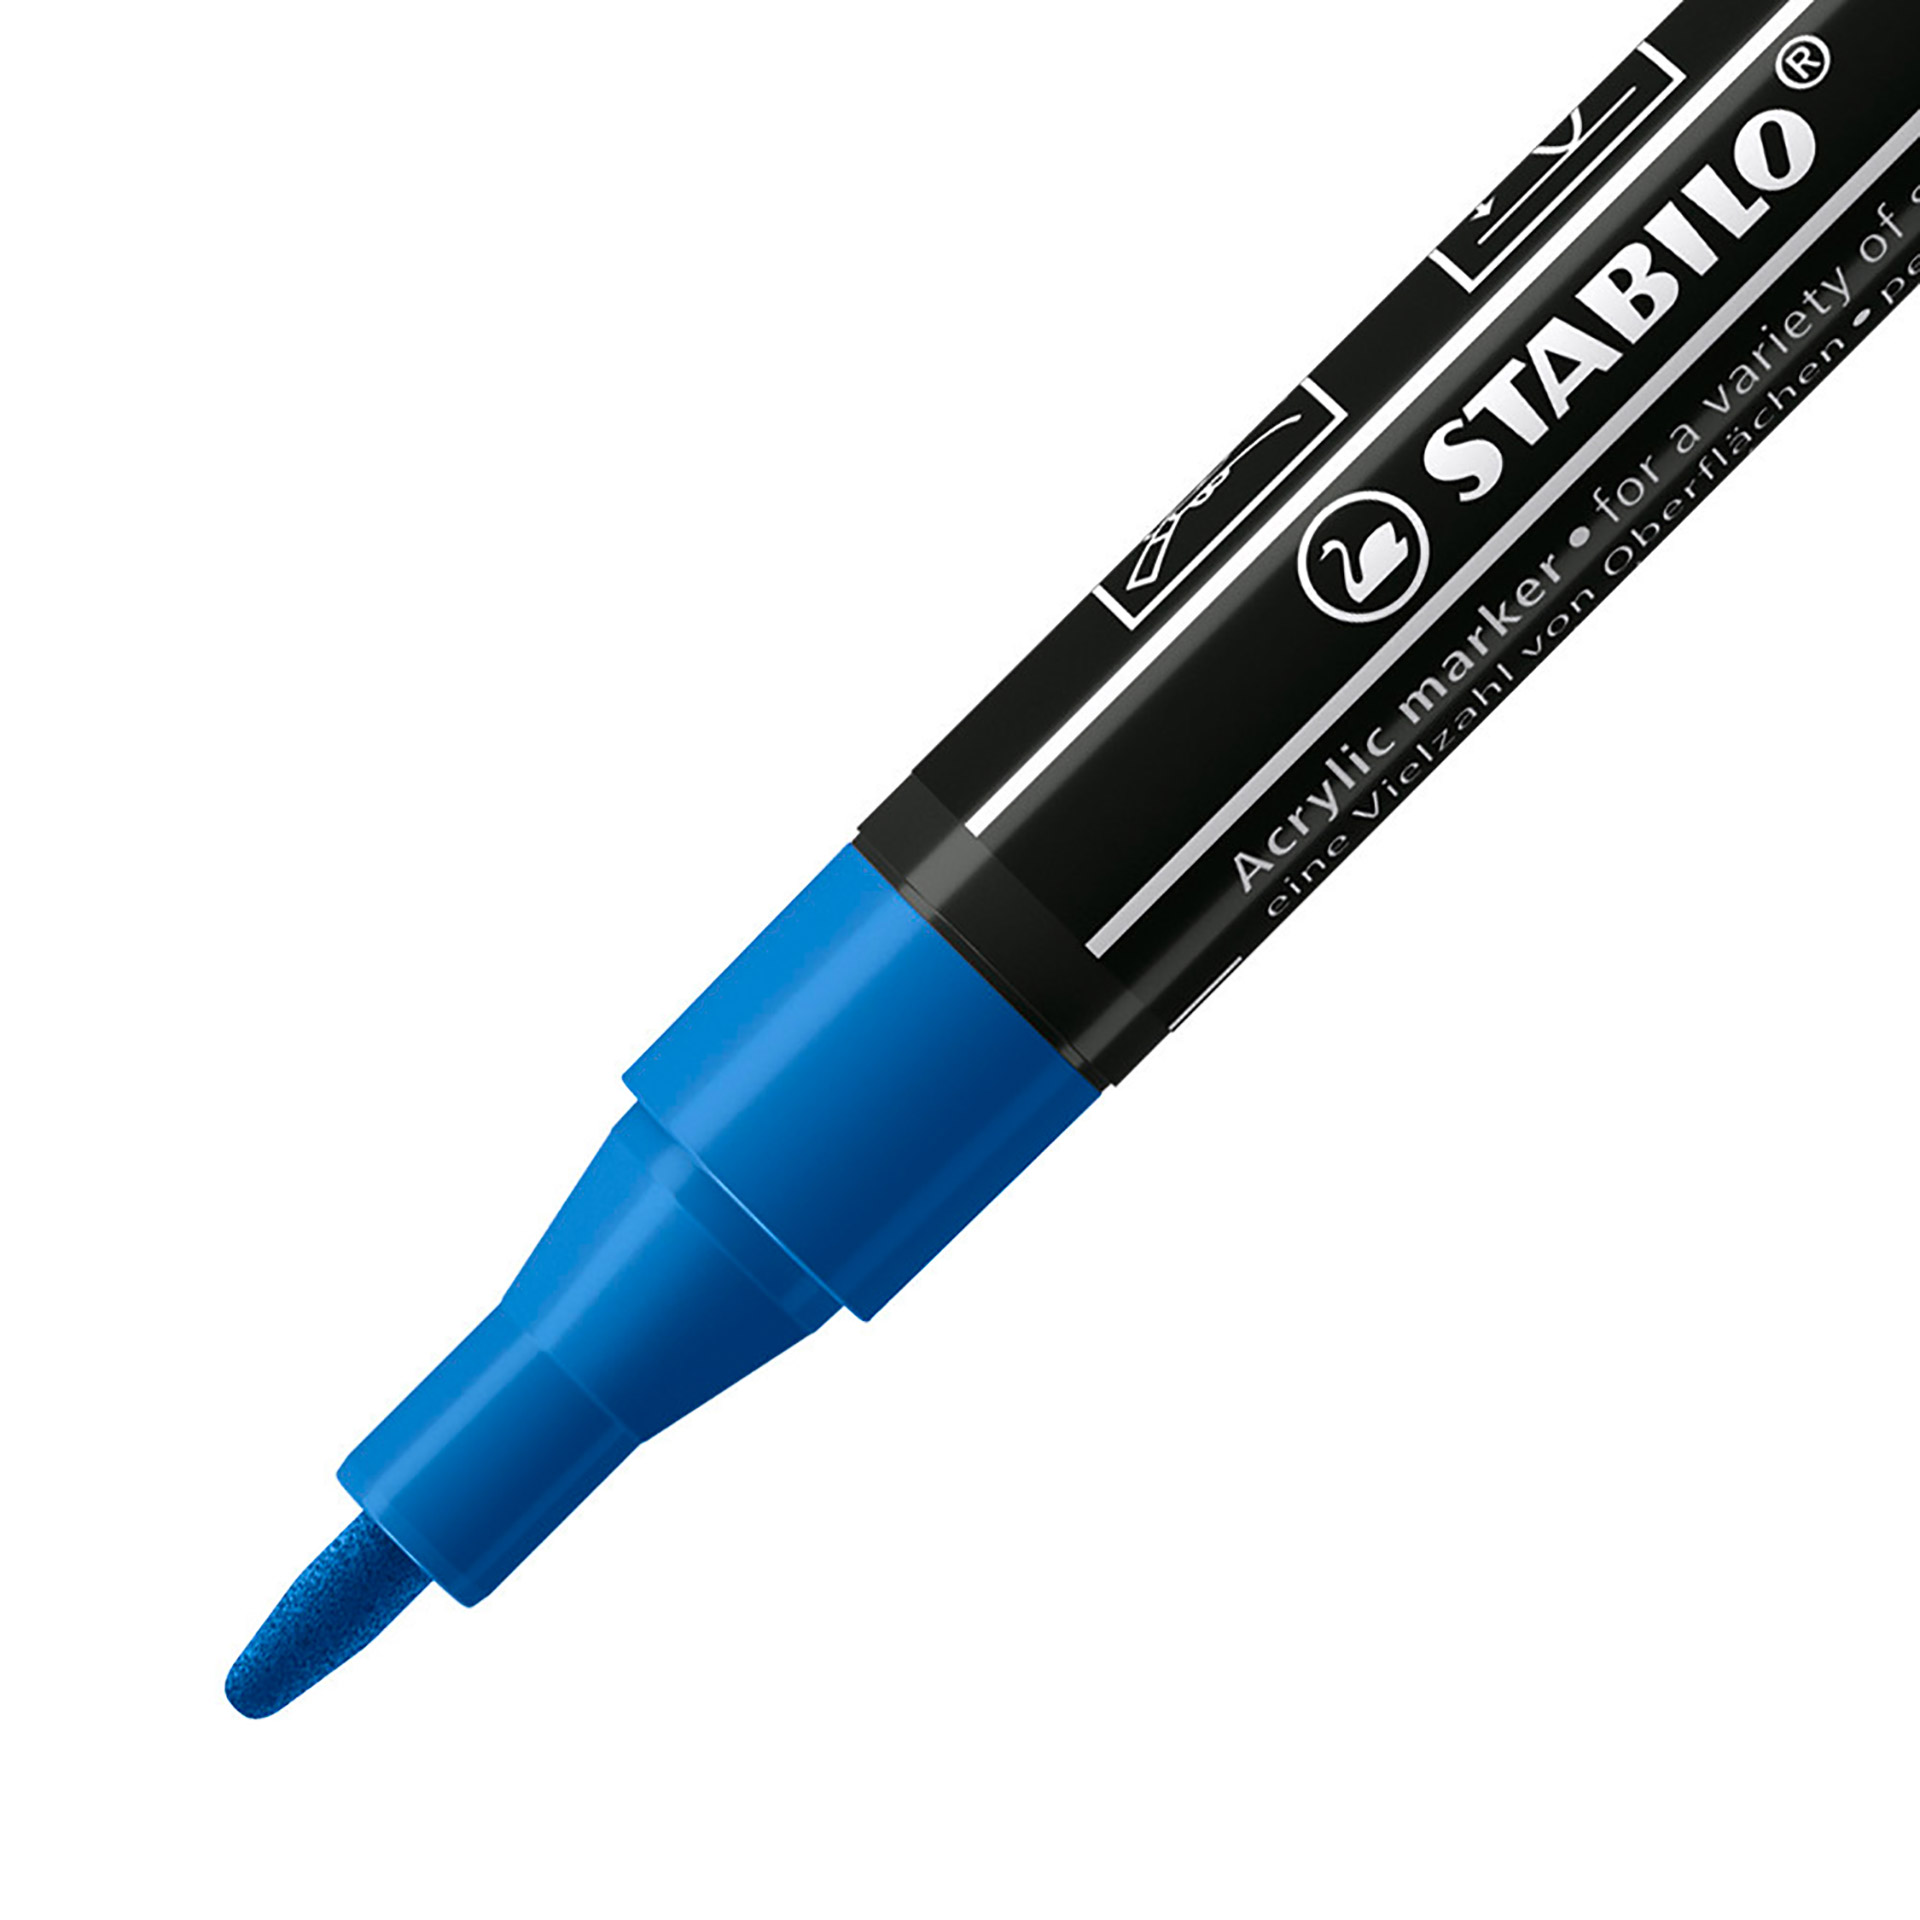 STABILO FREE Acrylic - T100 Punta rotonda 1-2mm - Confezione da 5 - Blu scuro, , large